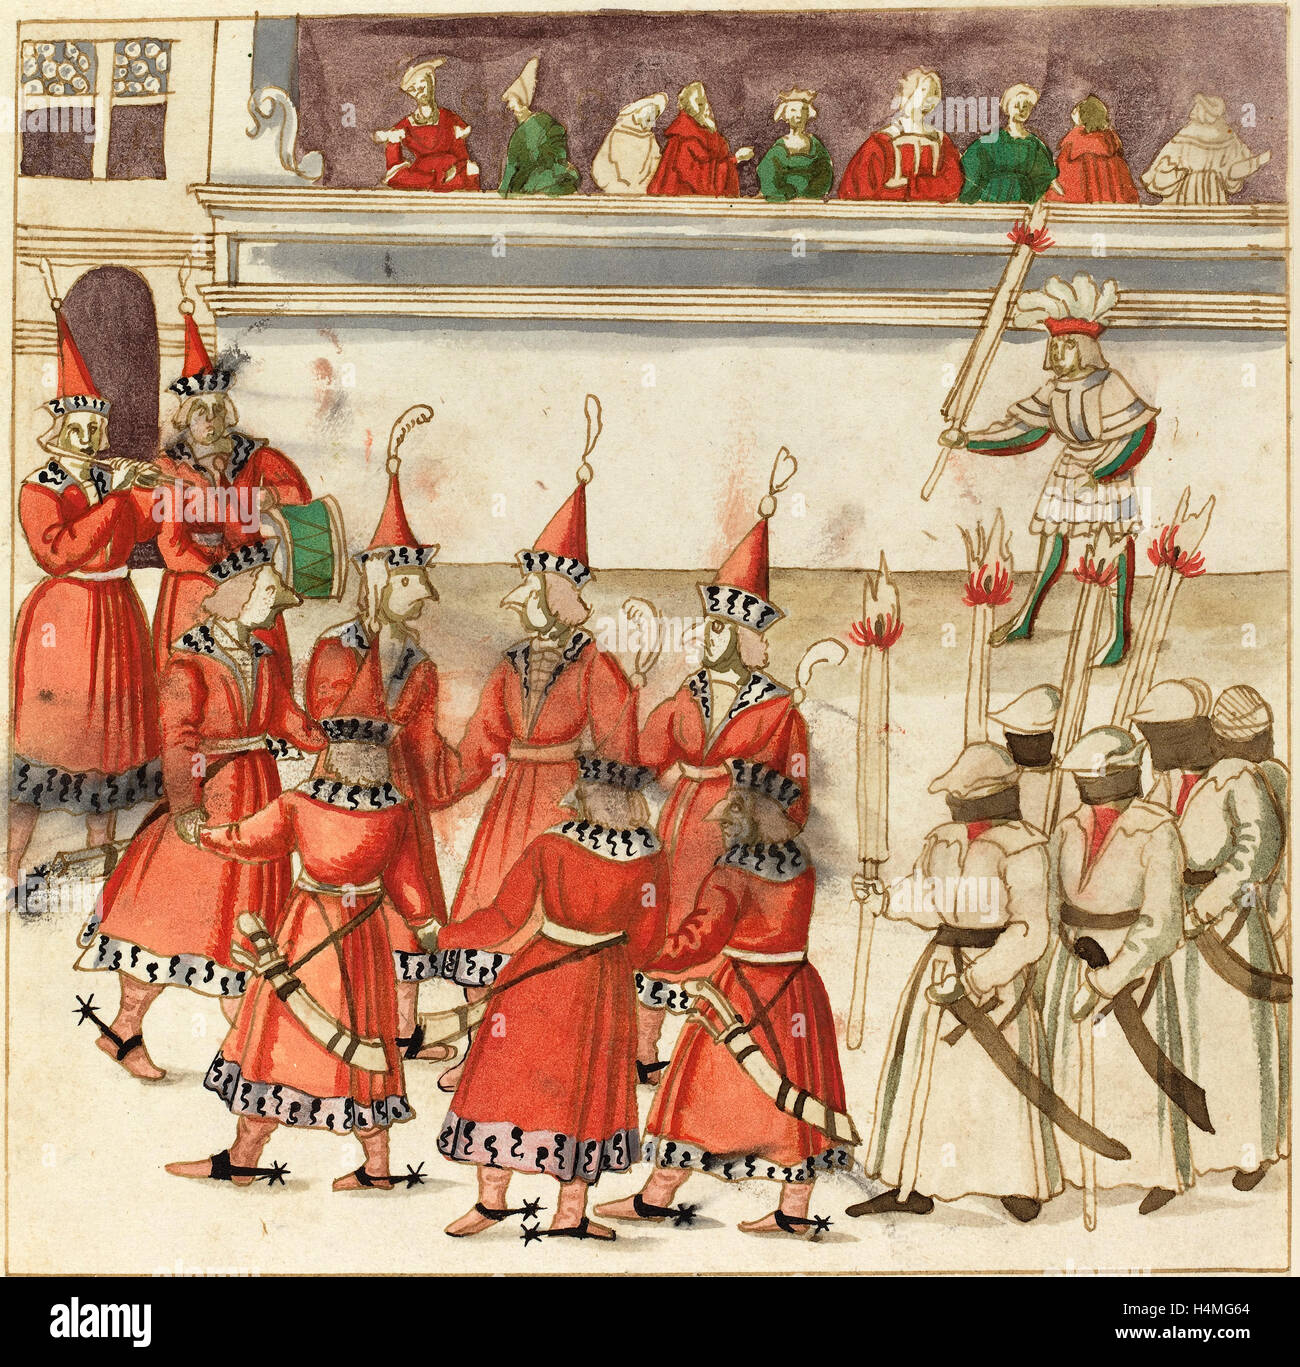 Deutsche 16. Jahrhundert, sieben Männer in rot versammelten sich in einem Kreis, c. 1515, Stift und Bister mit Aquarell auf Bütten Stockfoto